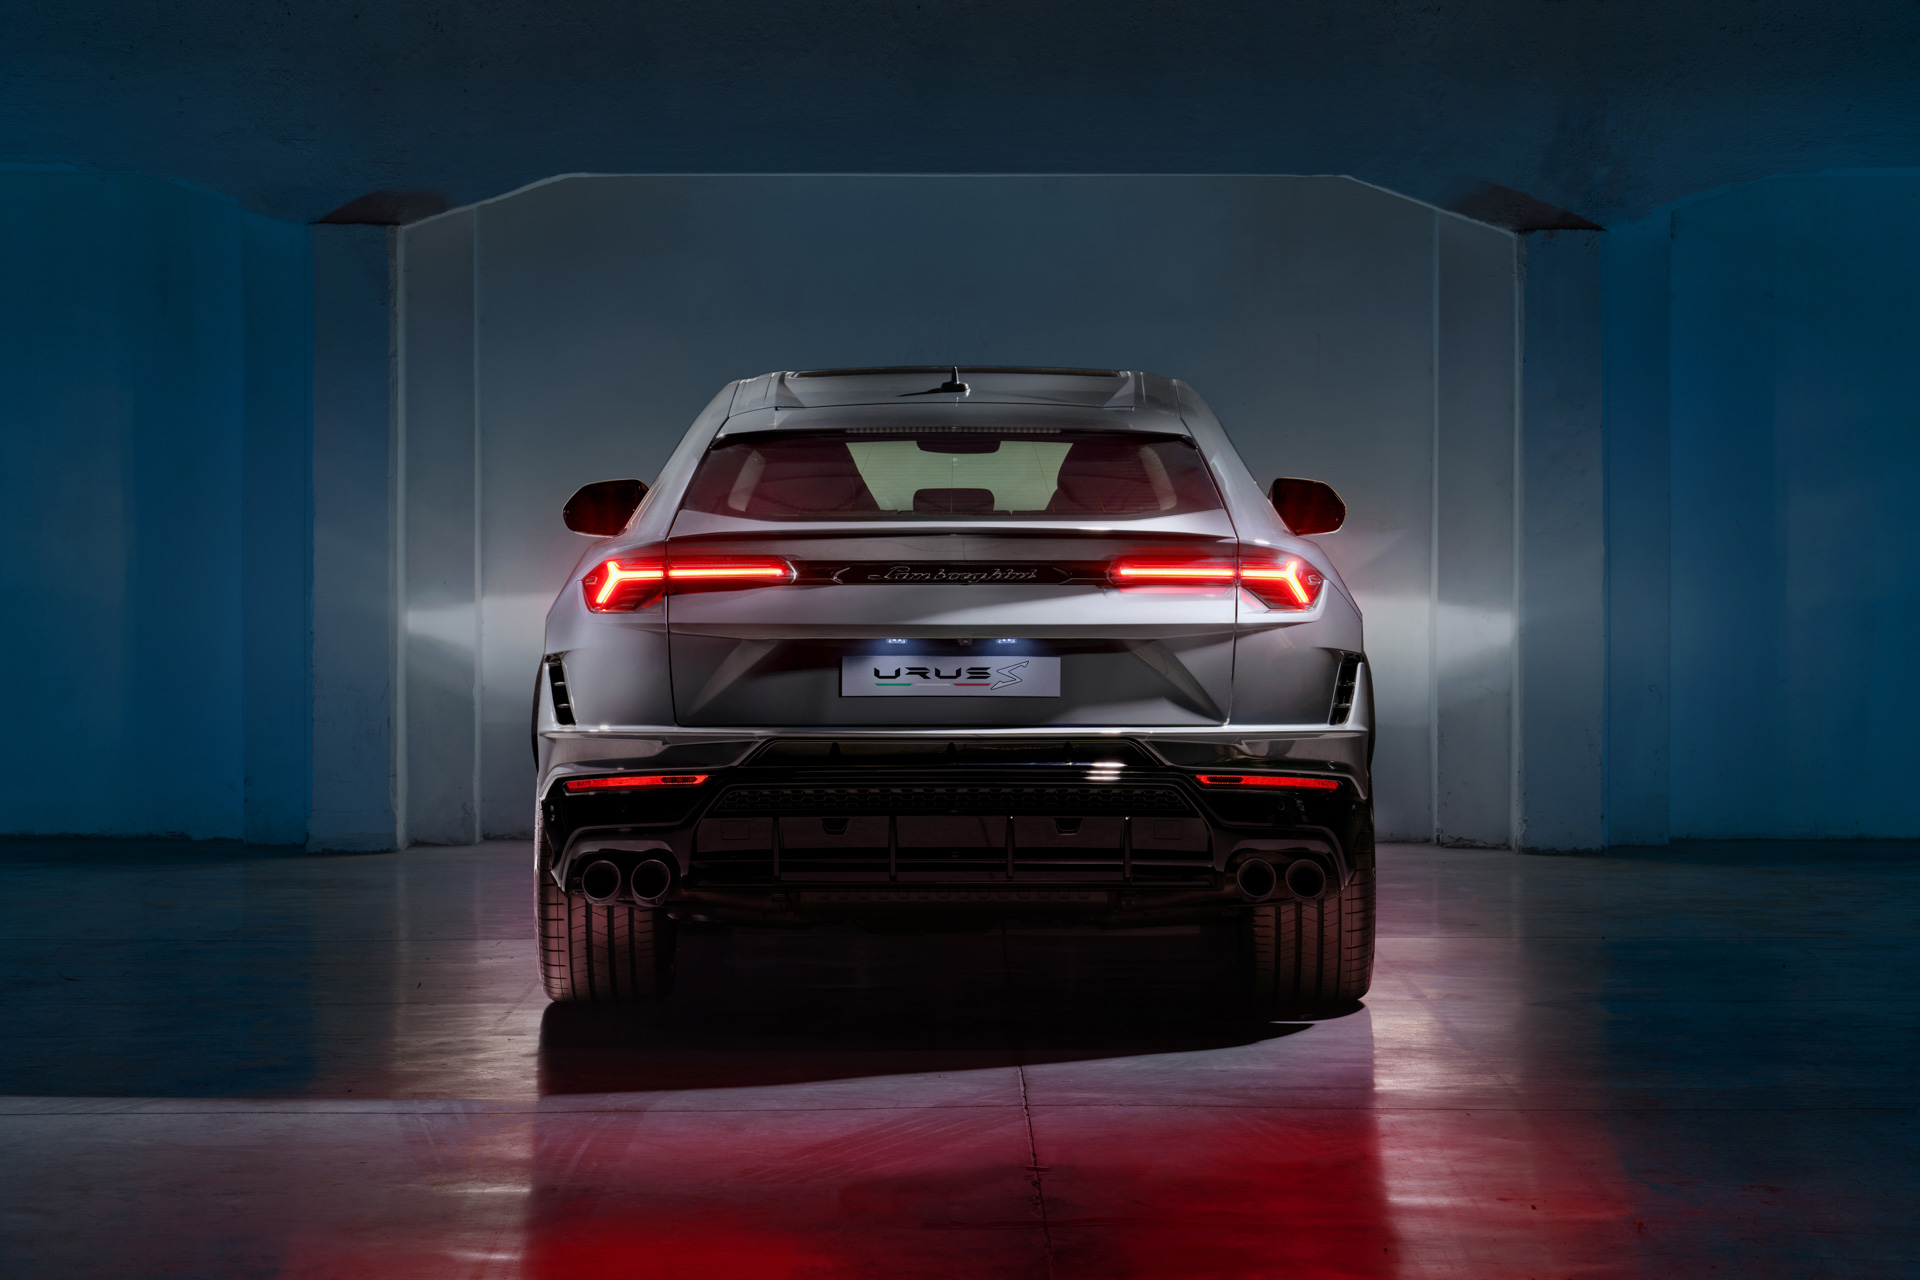 Yeni Lamborghini Urus S tanıtıldı: Daha fazla güç ve agresif tasarım